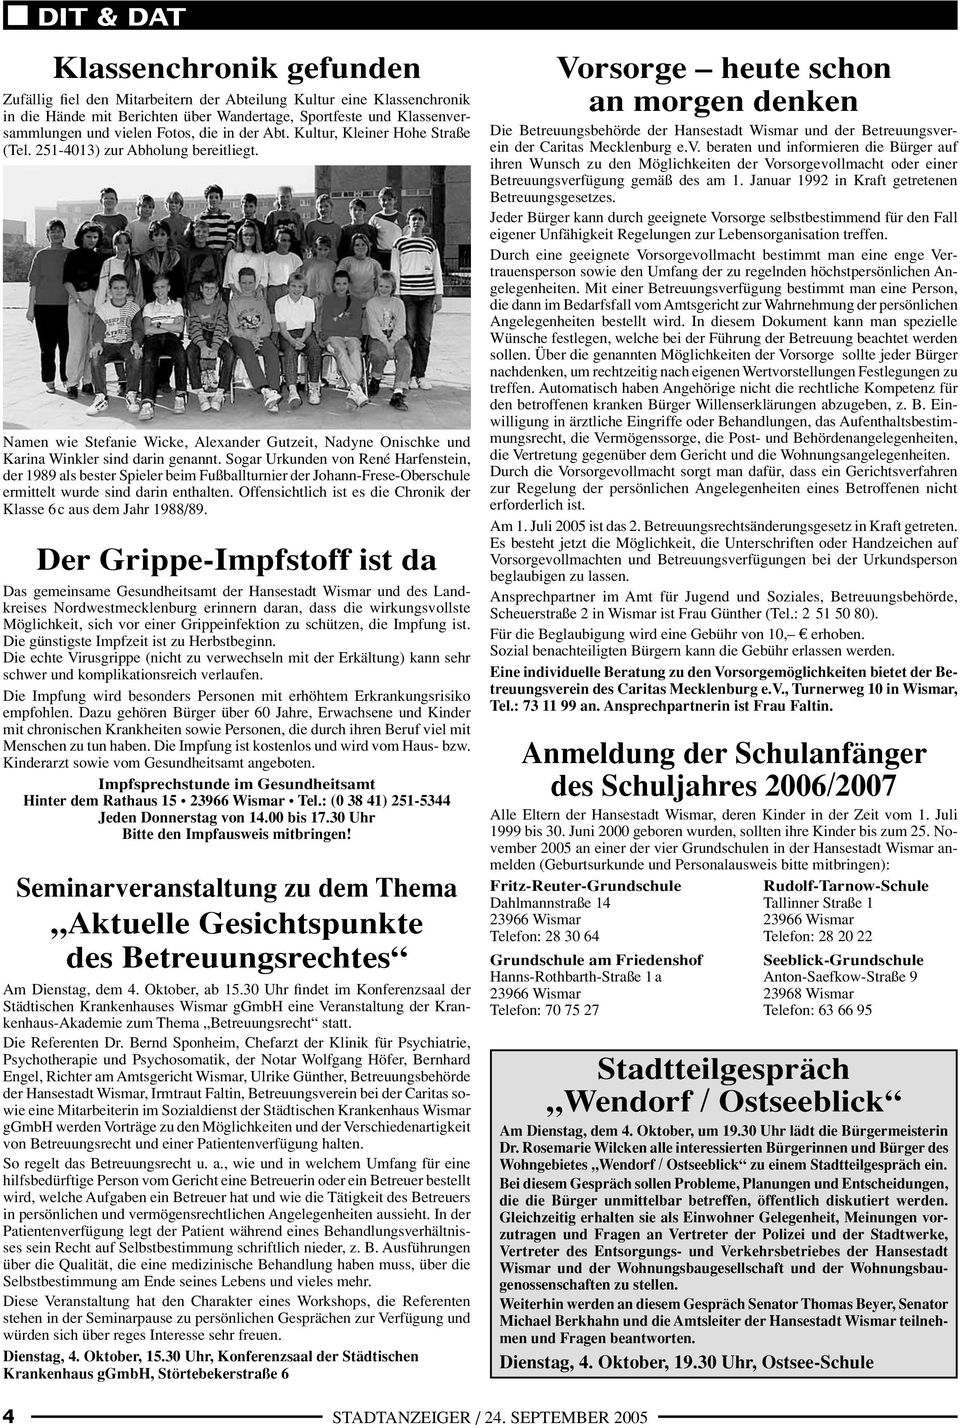 Sogar Urkunden von René Harfenstein, der 1989 als bester Spieler beim Fußballturnier der Johann-Frese-Oberschule ermittelt wurde sind darin enthalten.